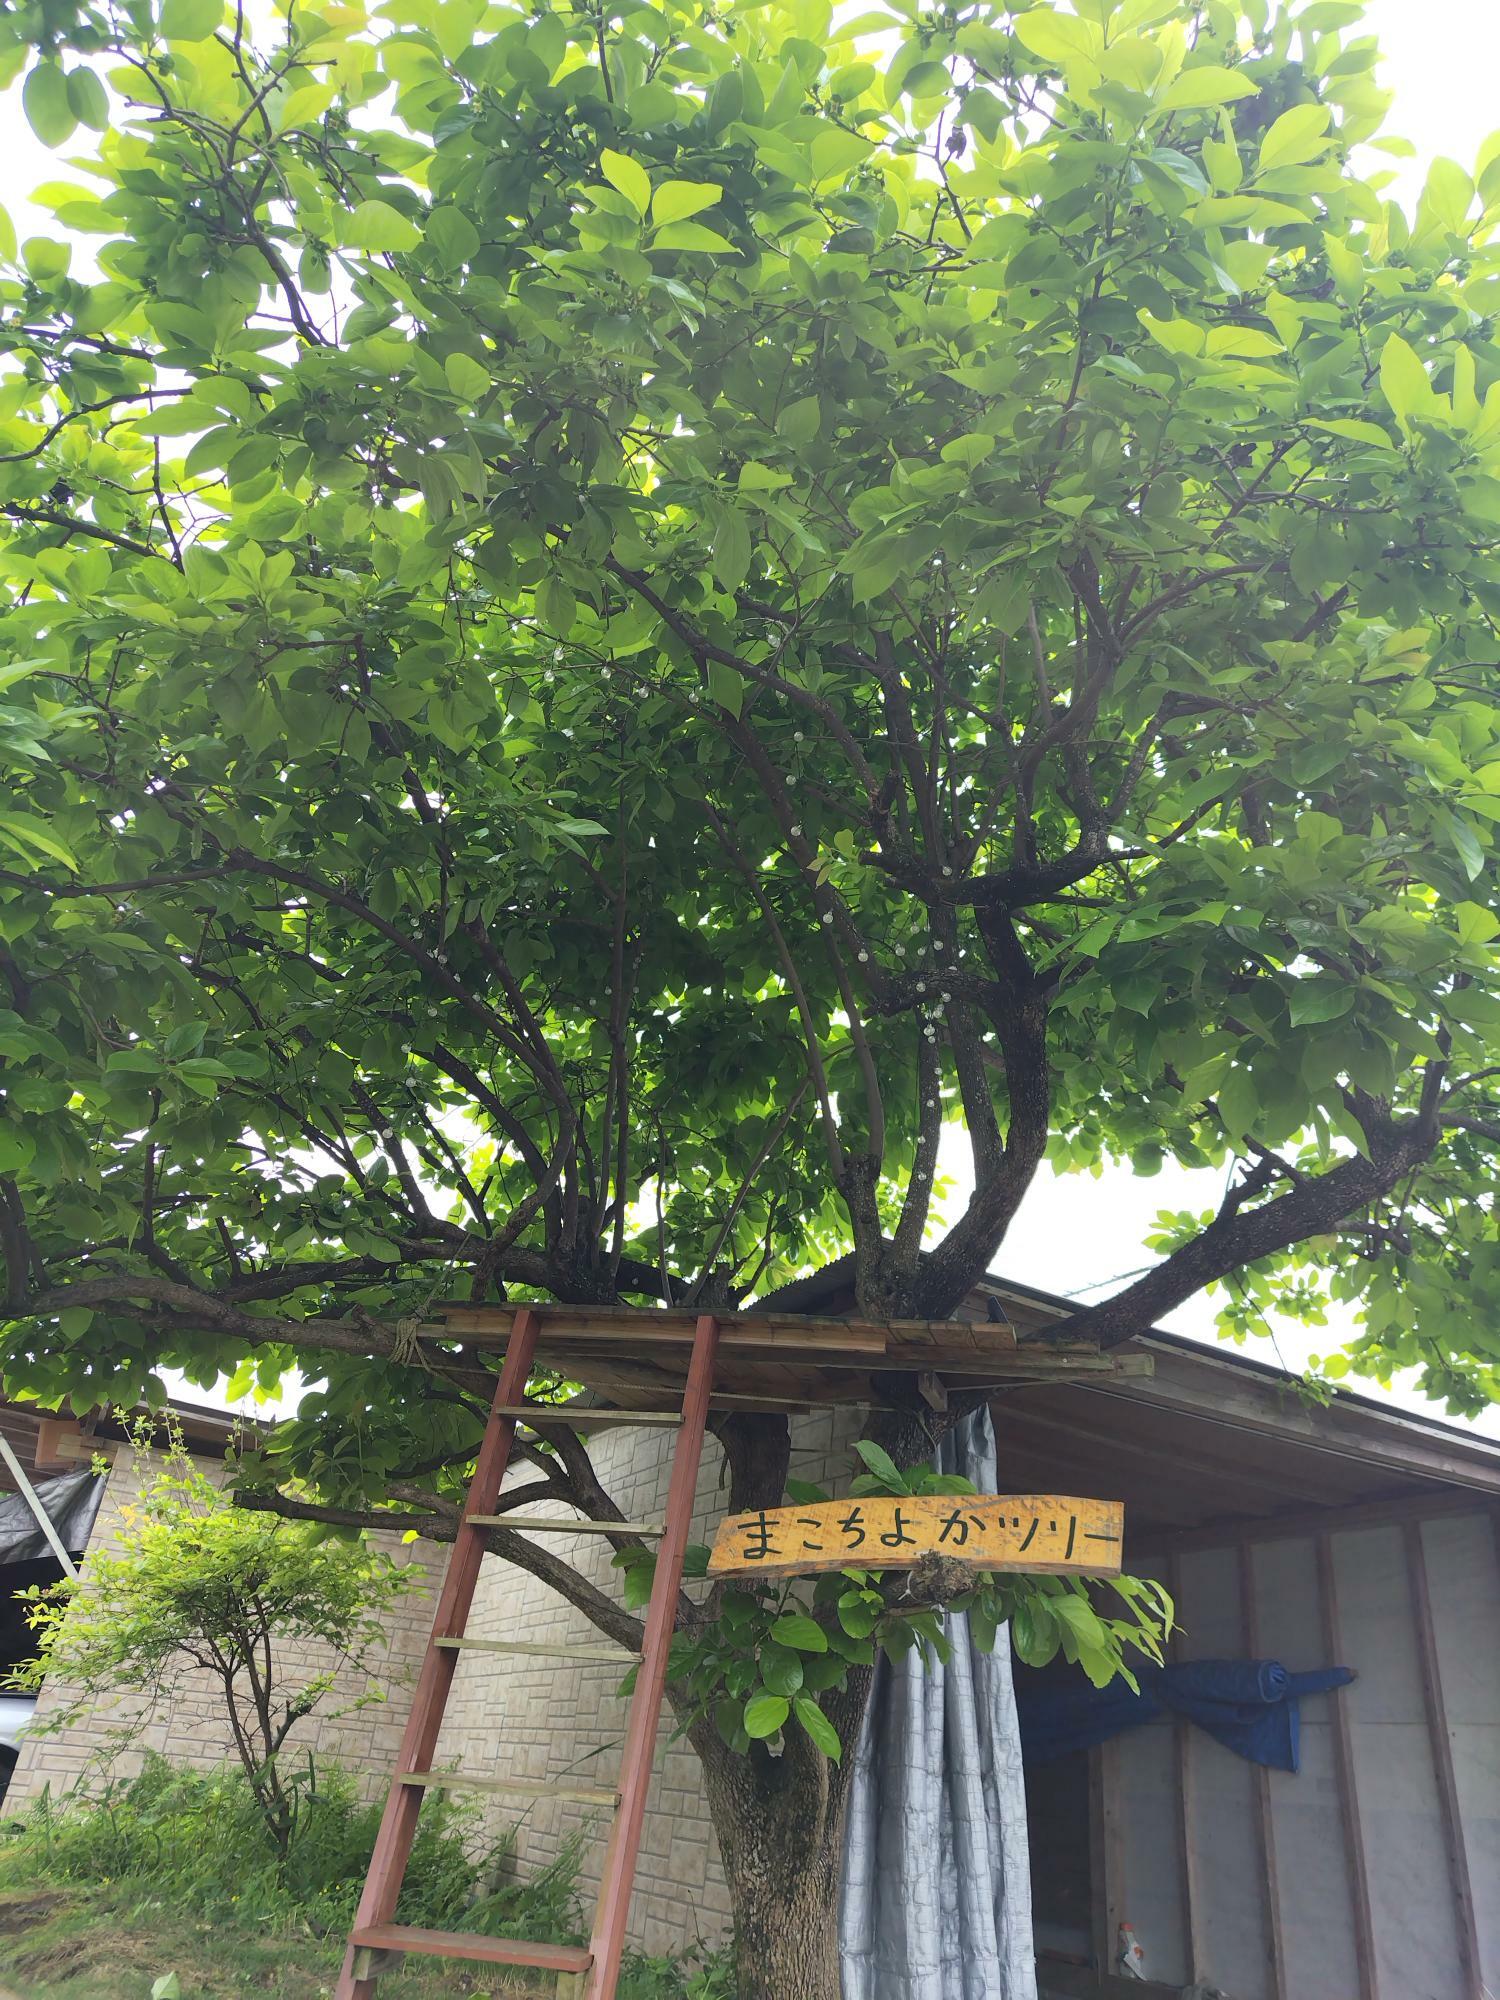 立派な柿の木の「まこちよかツリー」。子どもが登って楽しめる